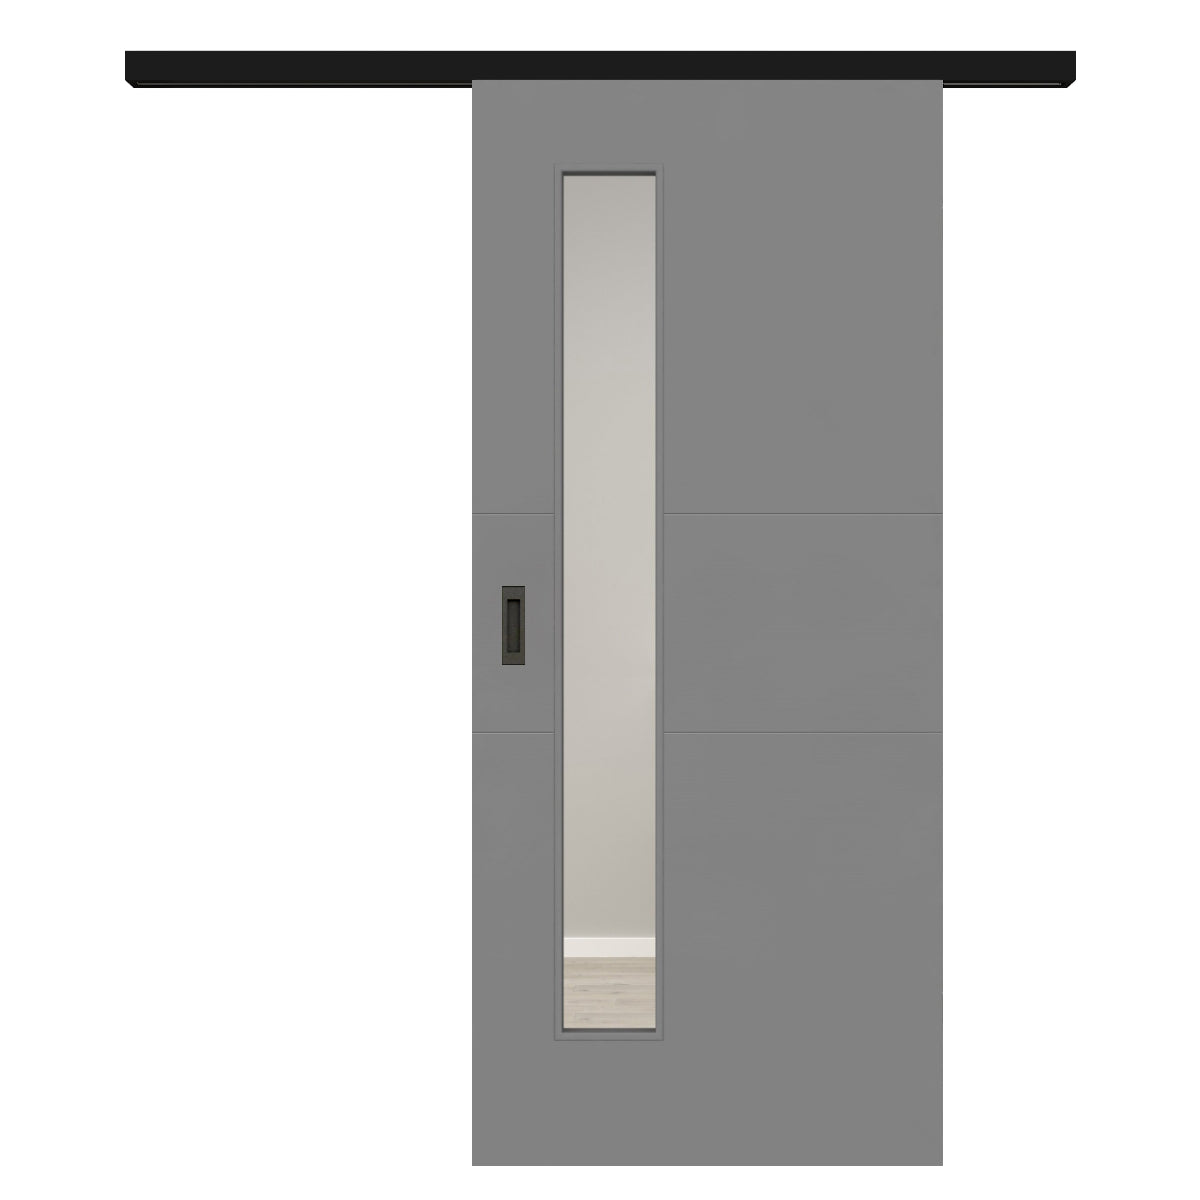 Schiebetür für Set mit schwarzem Laufkasten mit Lichtausschnitt grau 2 Rillen quer - Modell Designtür Q27LAS